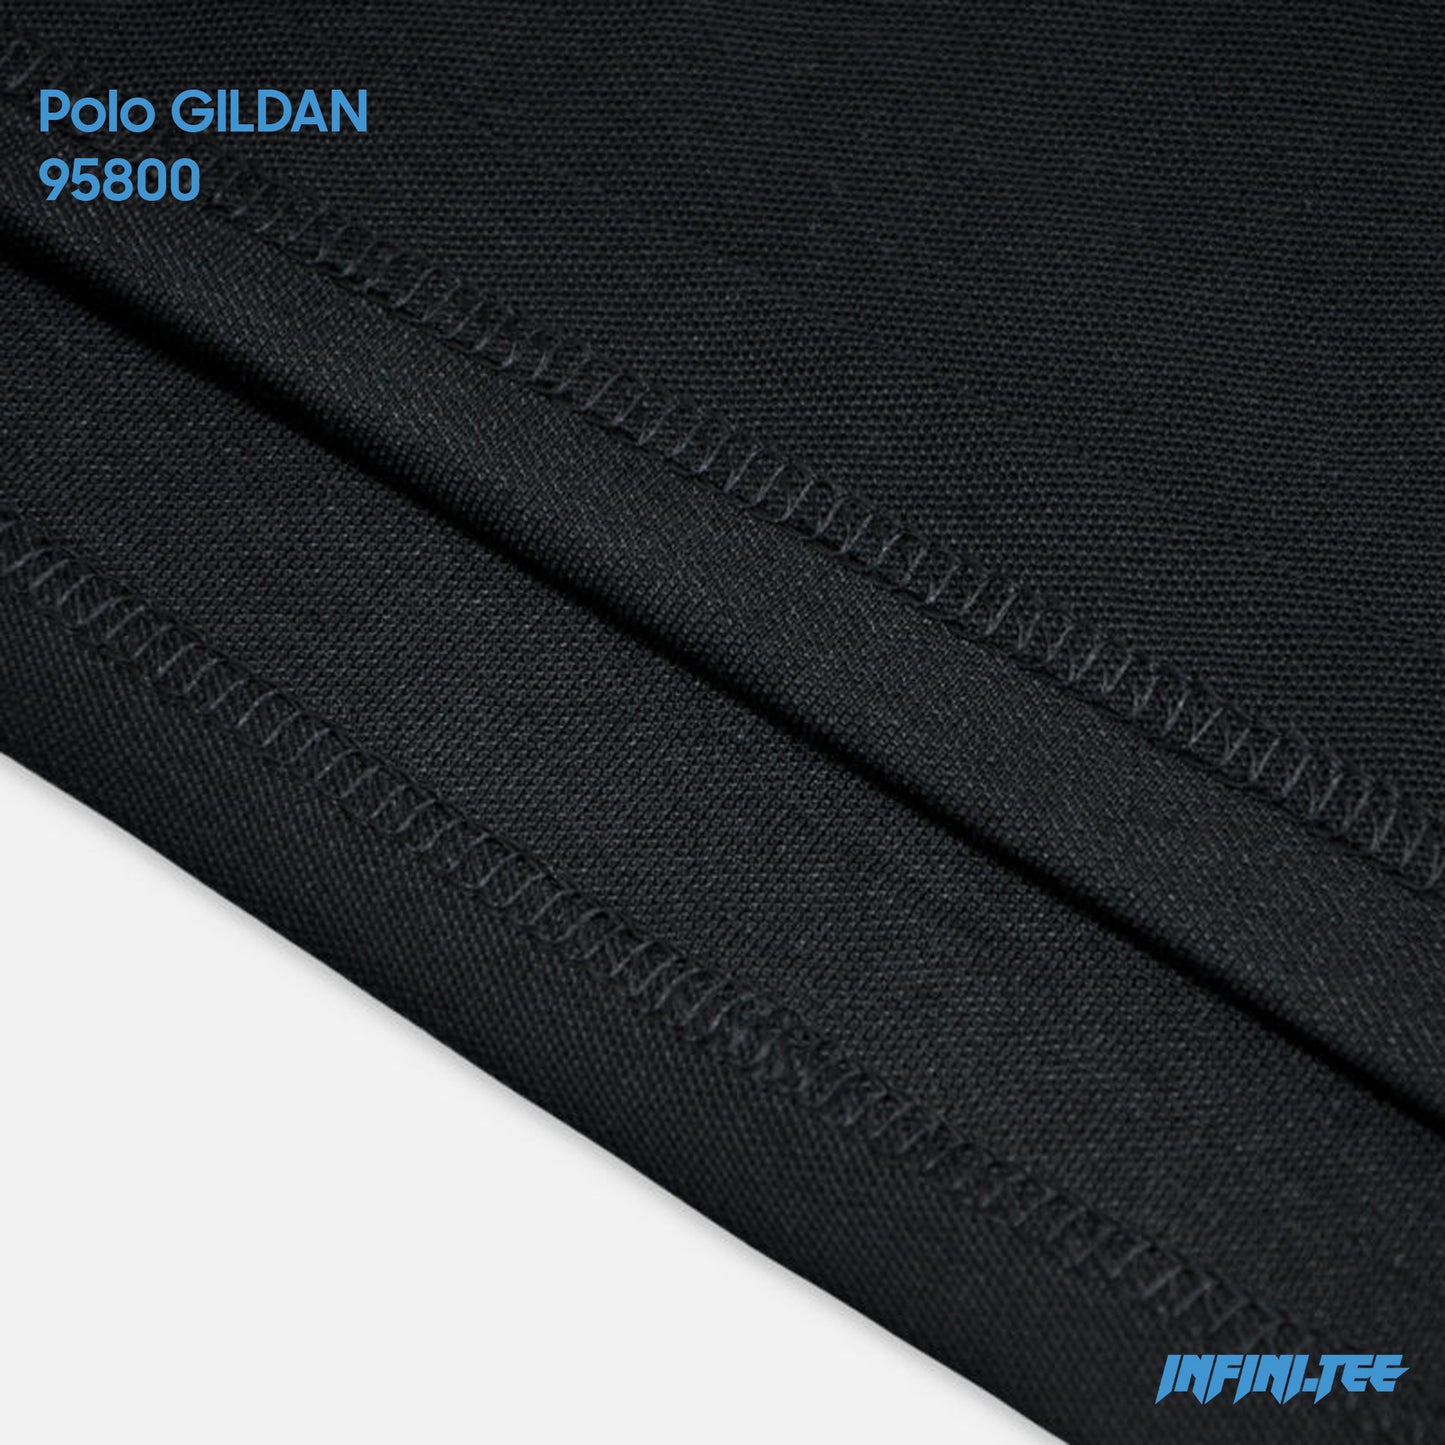 Polo Design - Gildan 95800